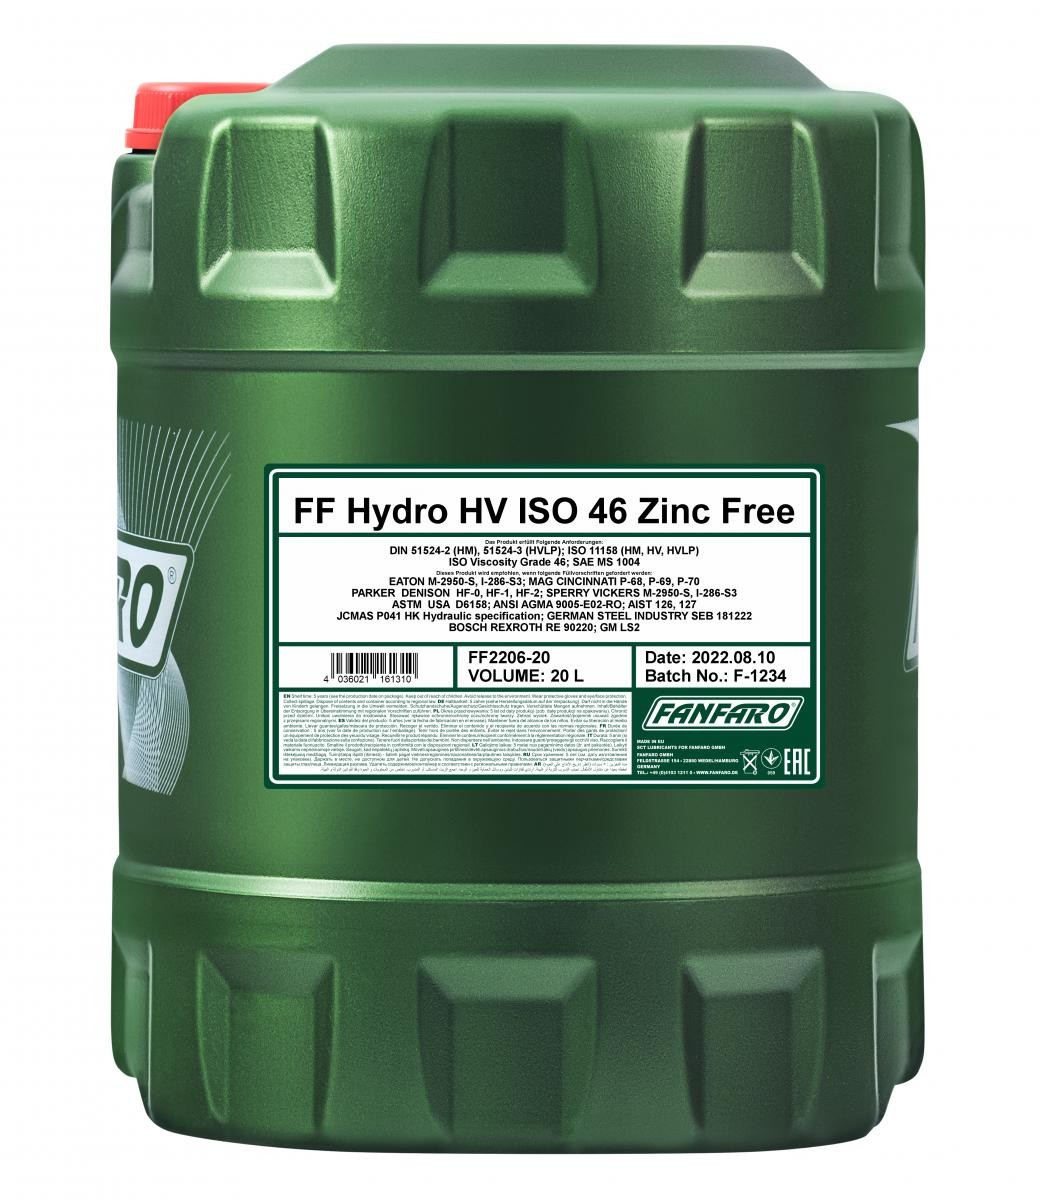 FANFARO Hydro HV ISO 22, VI 280 FF2206-20 Hydraulic Oil Capacity: 20l